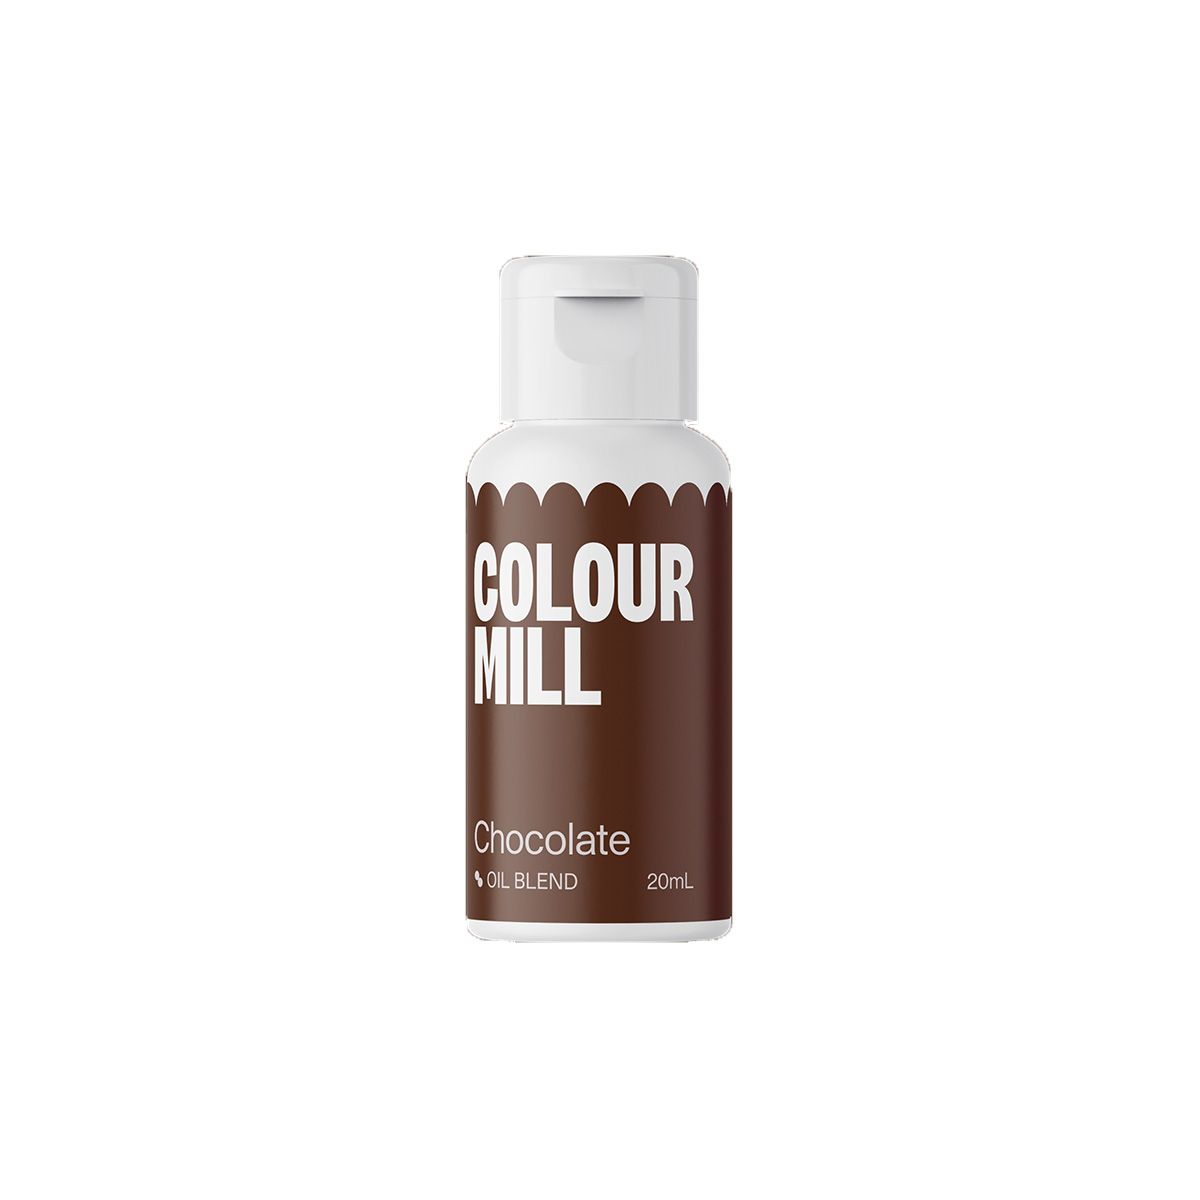 Χρώμα Chocolate Colour Mill 20ml